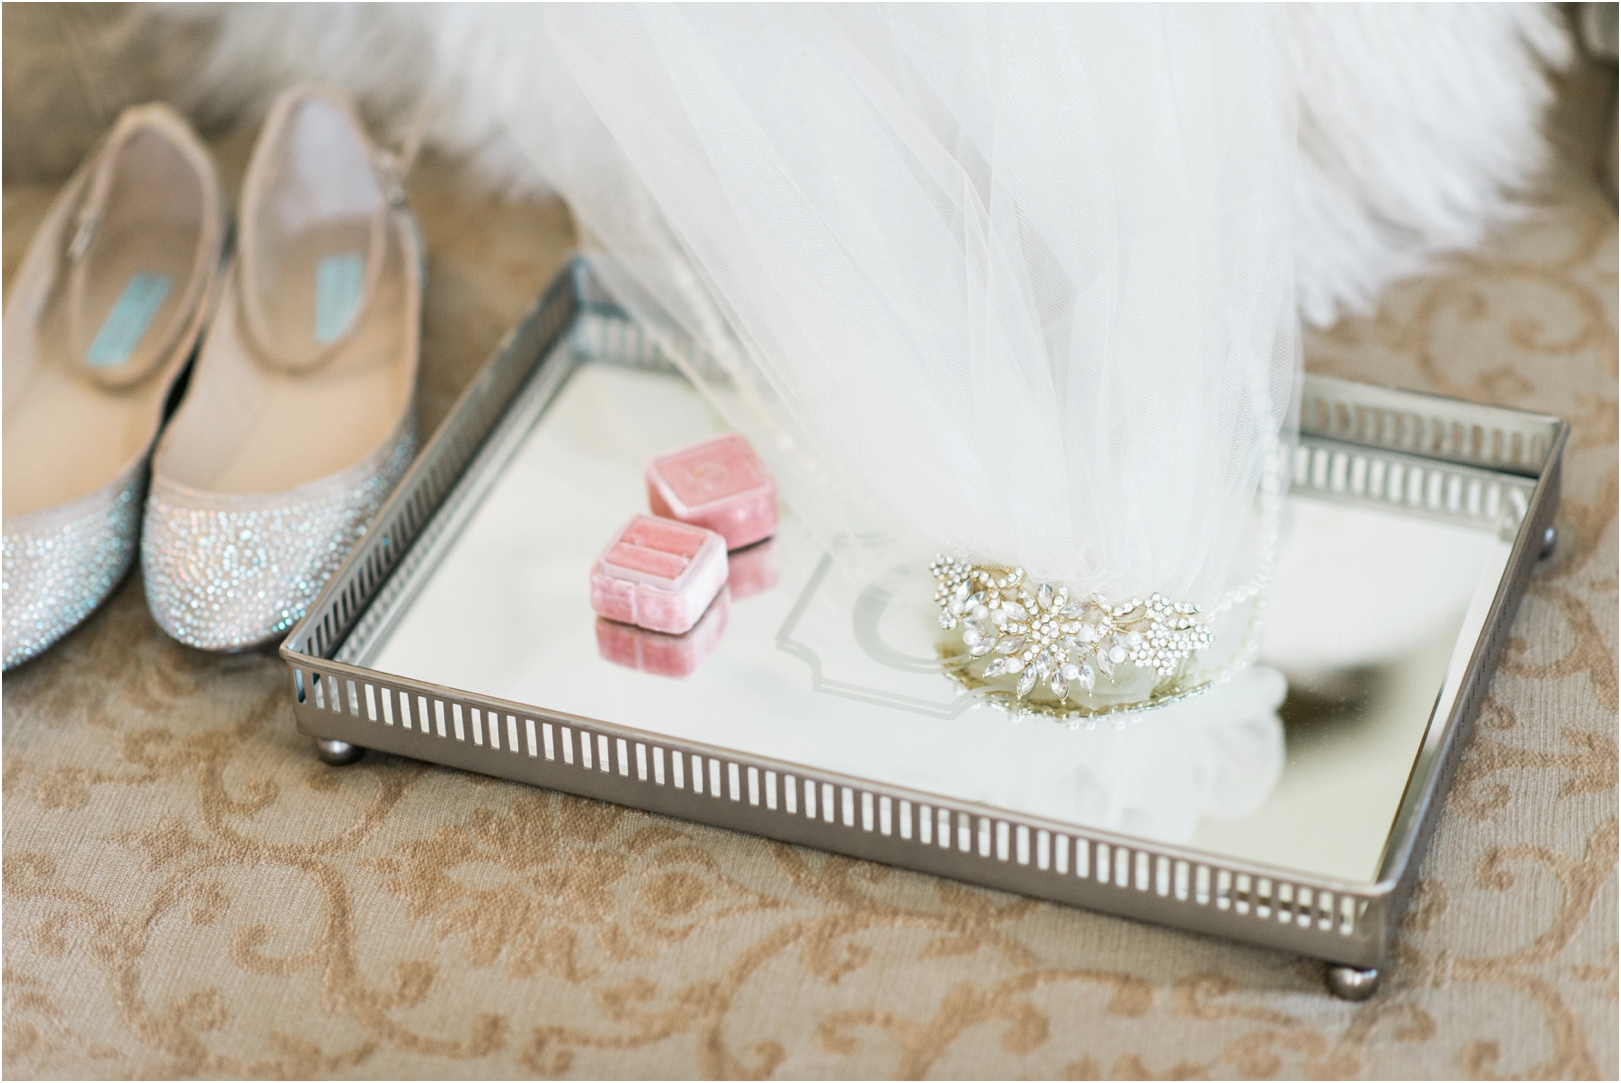 glamorous wedding details on mirror tray